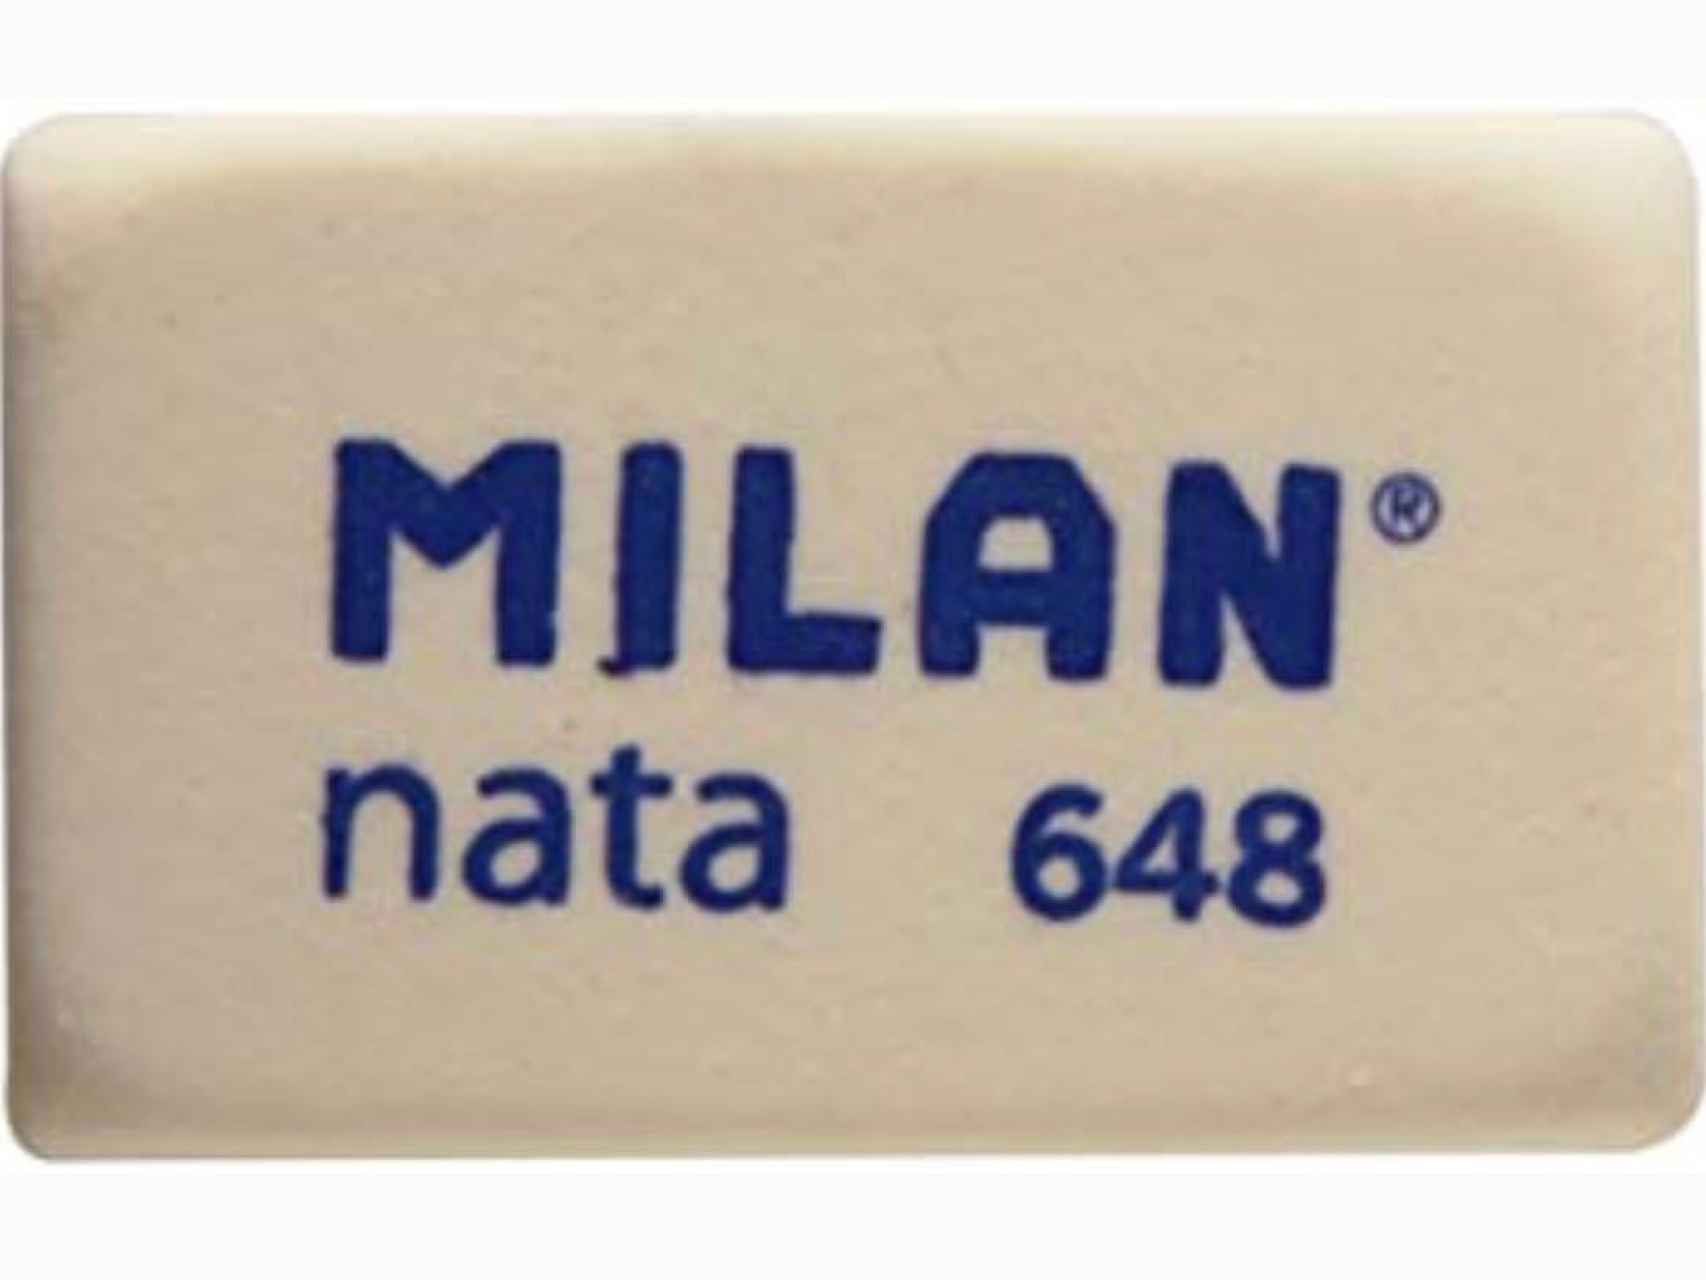 La “olorosa” goma Milan Nata 648